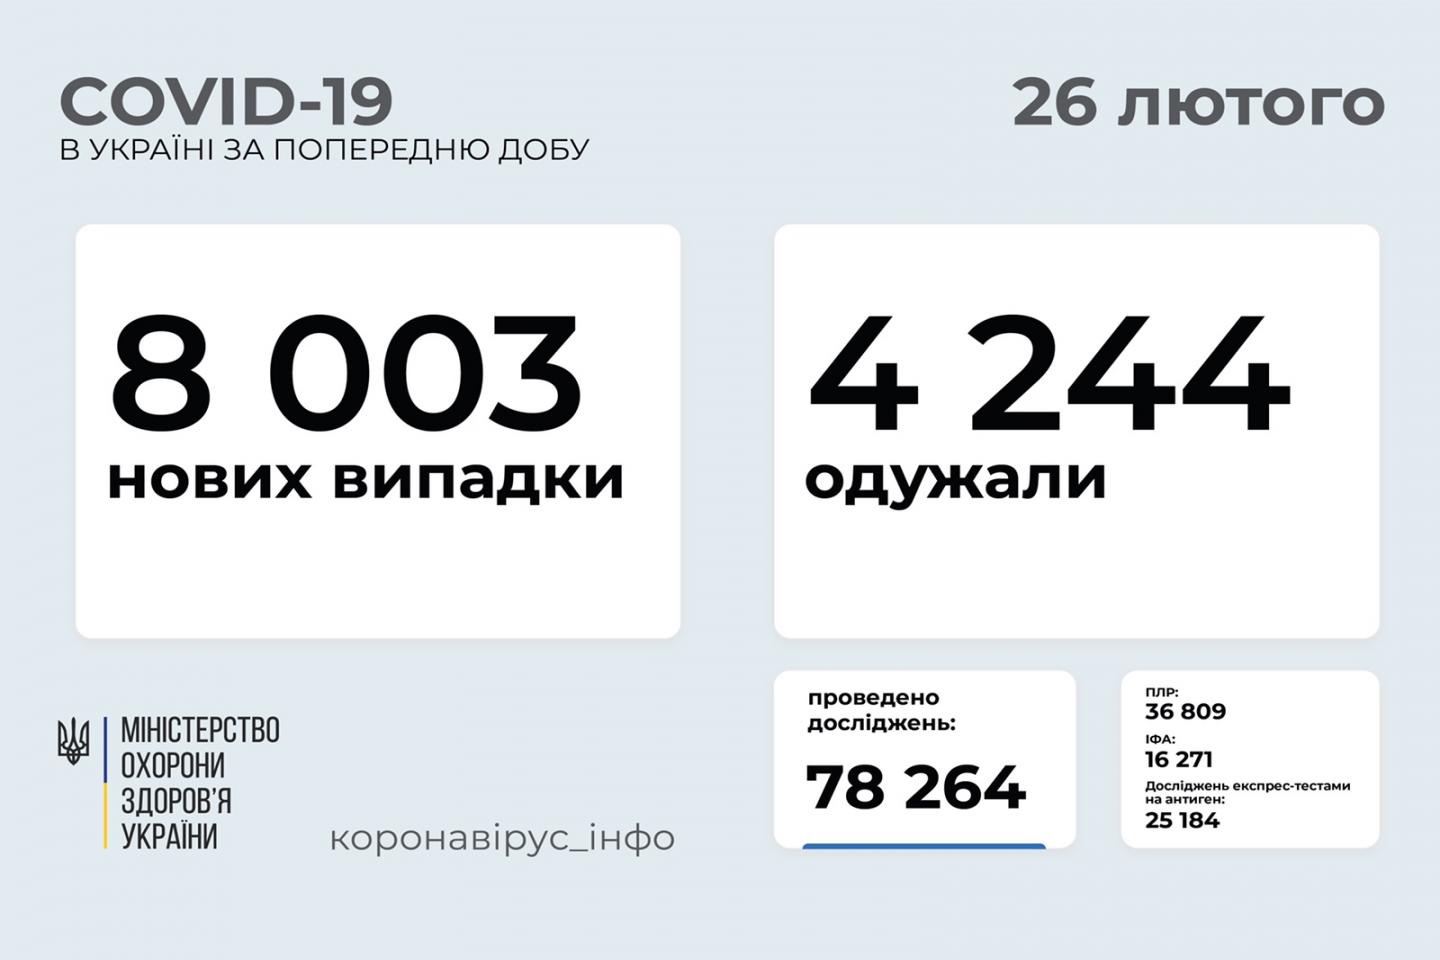 http://dunrada.gov.ua/uploadfile/archive_news/2021/02/26/2021-02-26_9233/images/images-82099.jpg